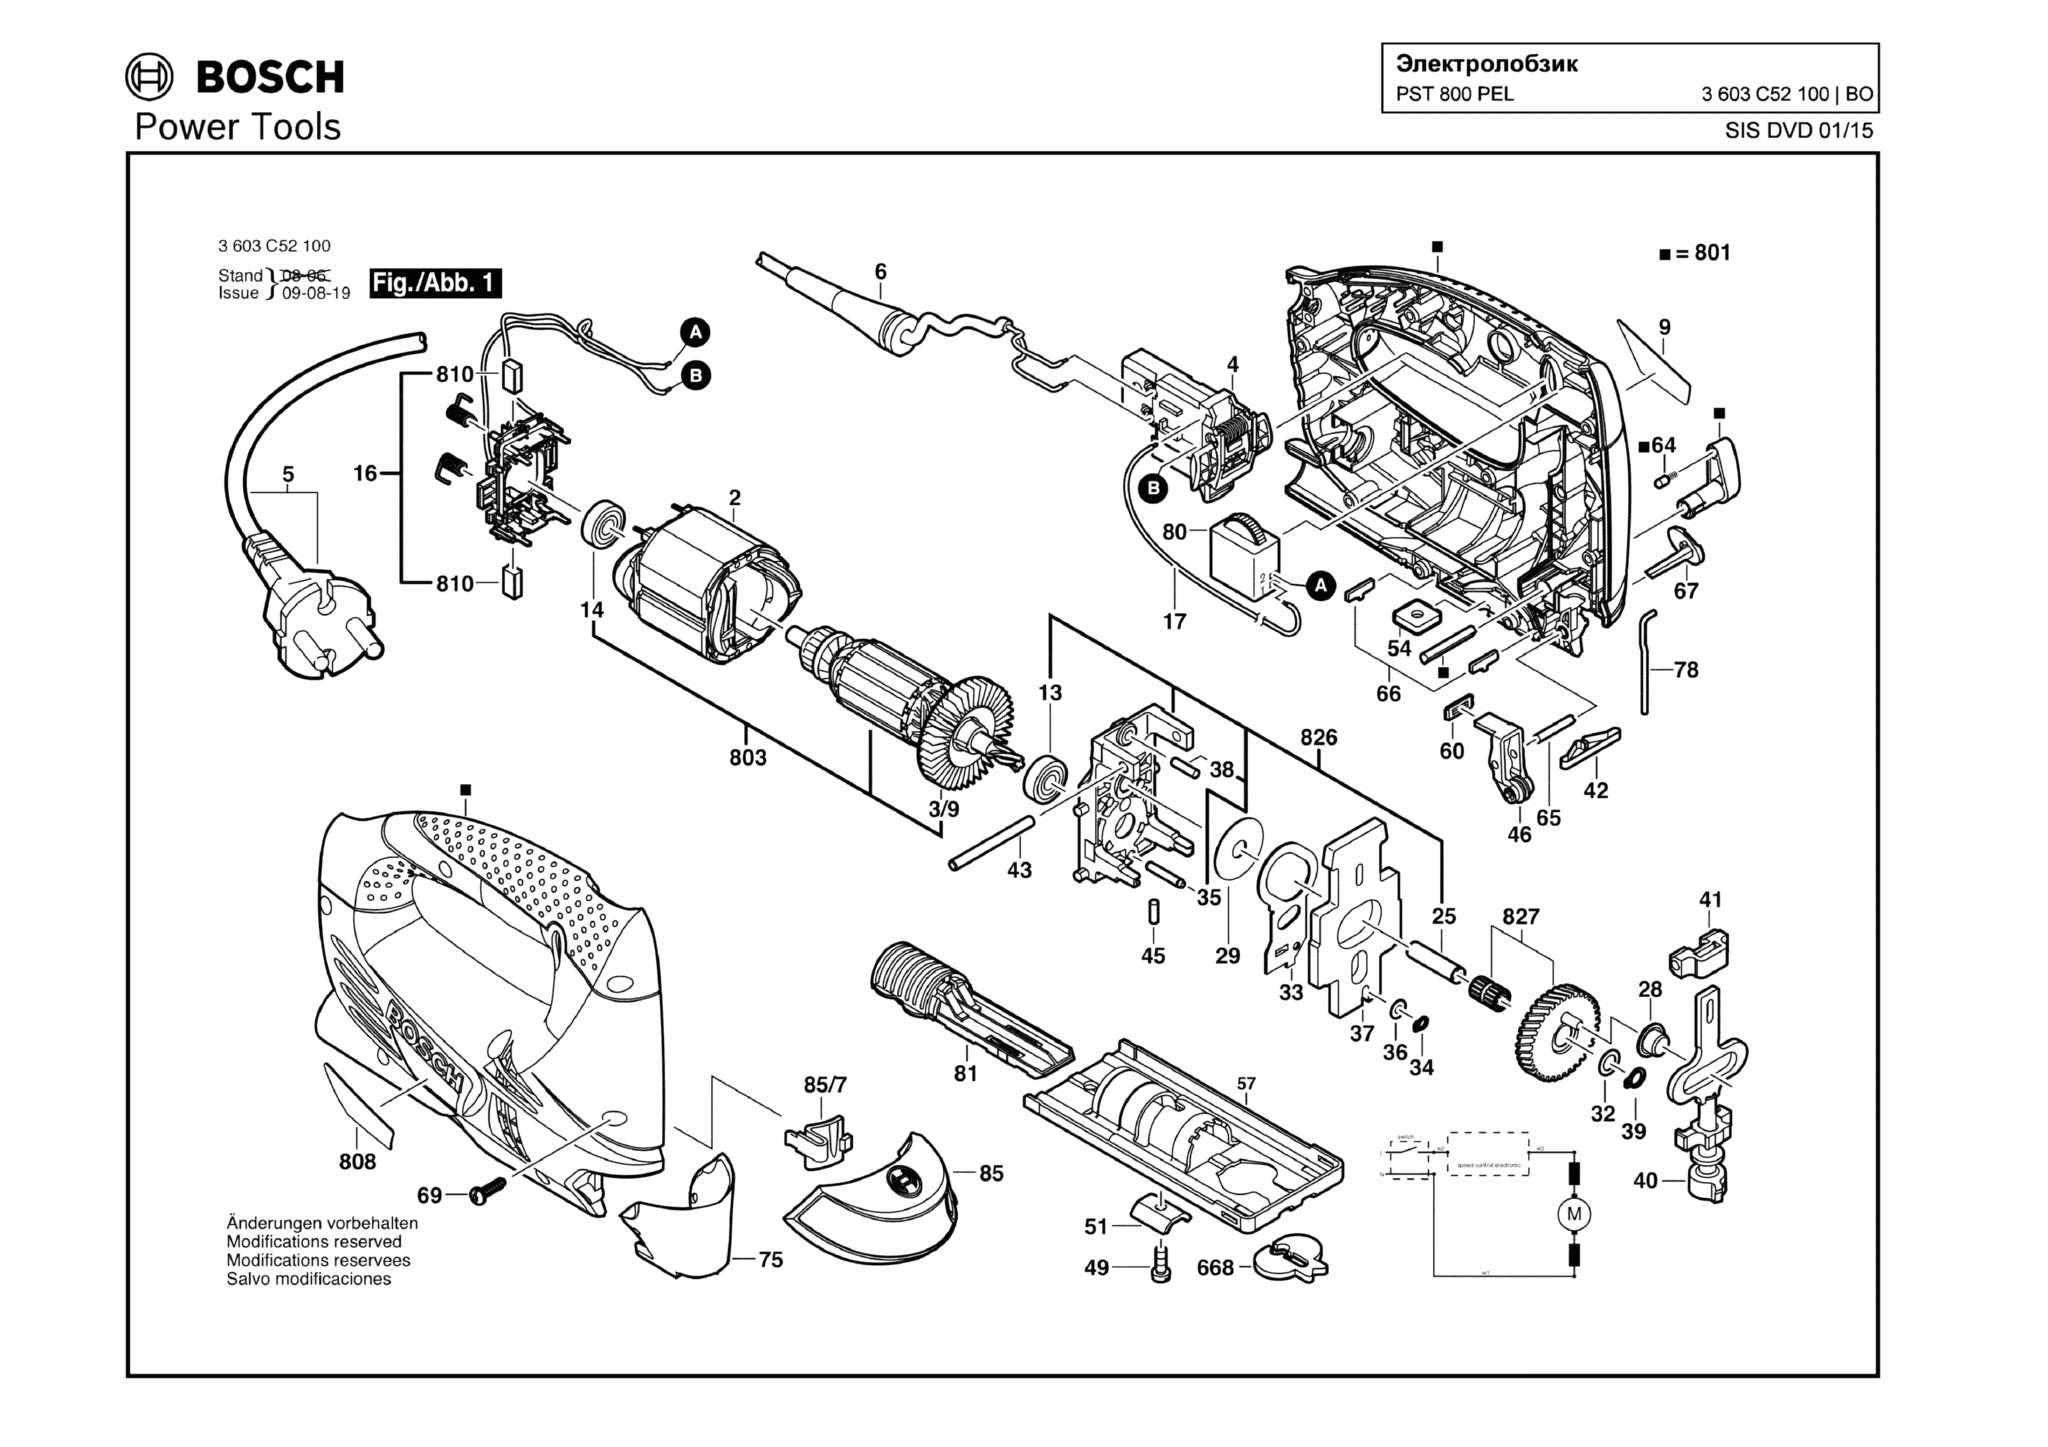 Запчасти, схема и деталировка Bosch PST 800 PEL (ТИП 3603C52100)